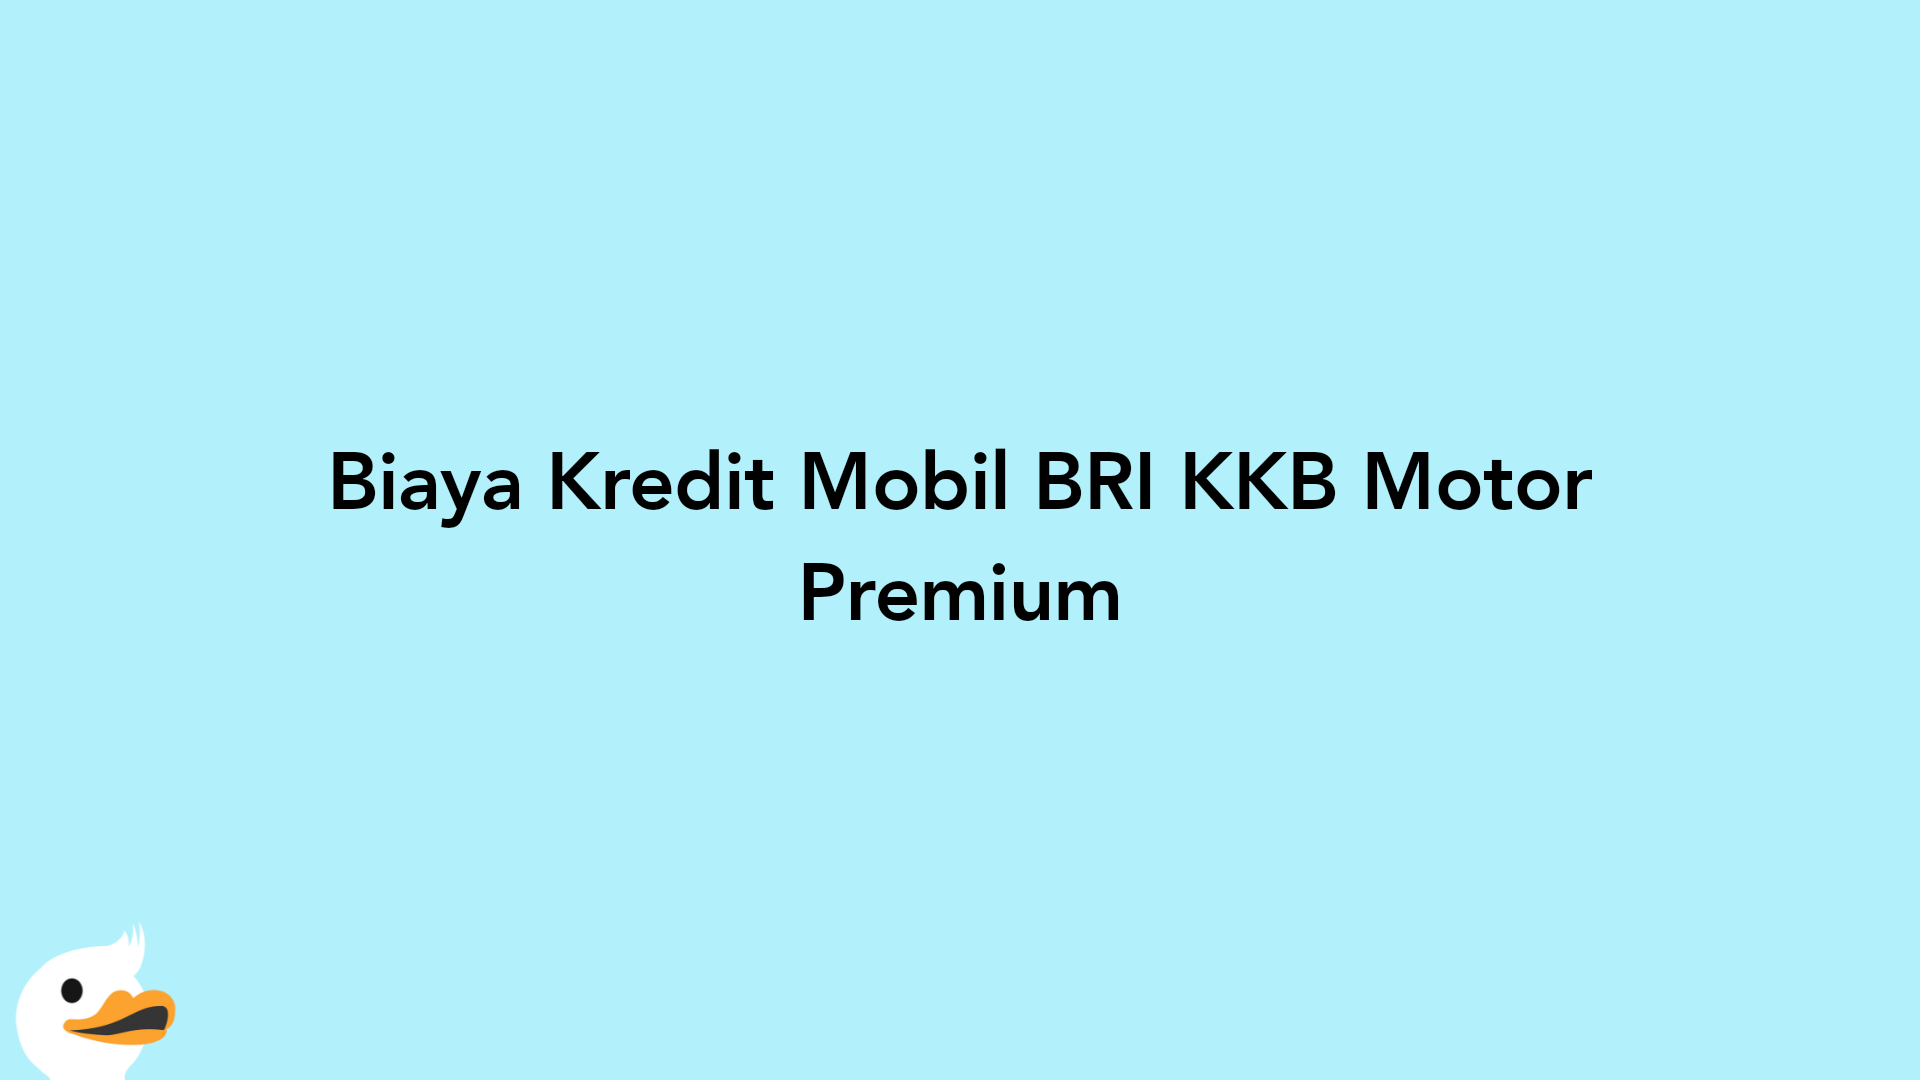 Biaya Kredit Mobil BRI KKB Motor Premium